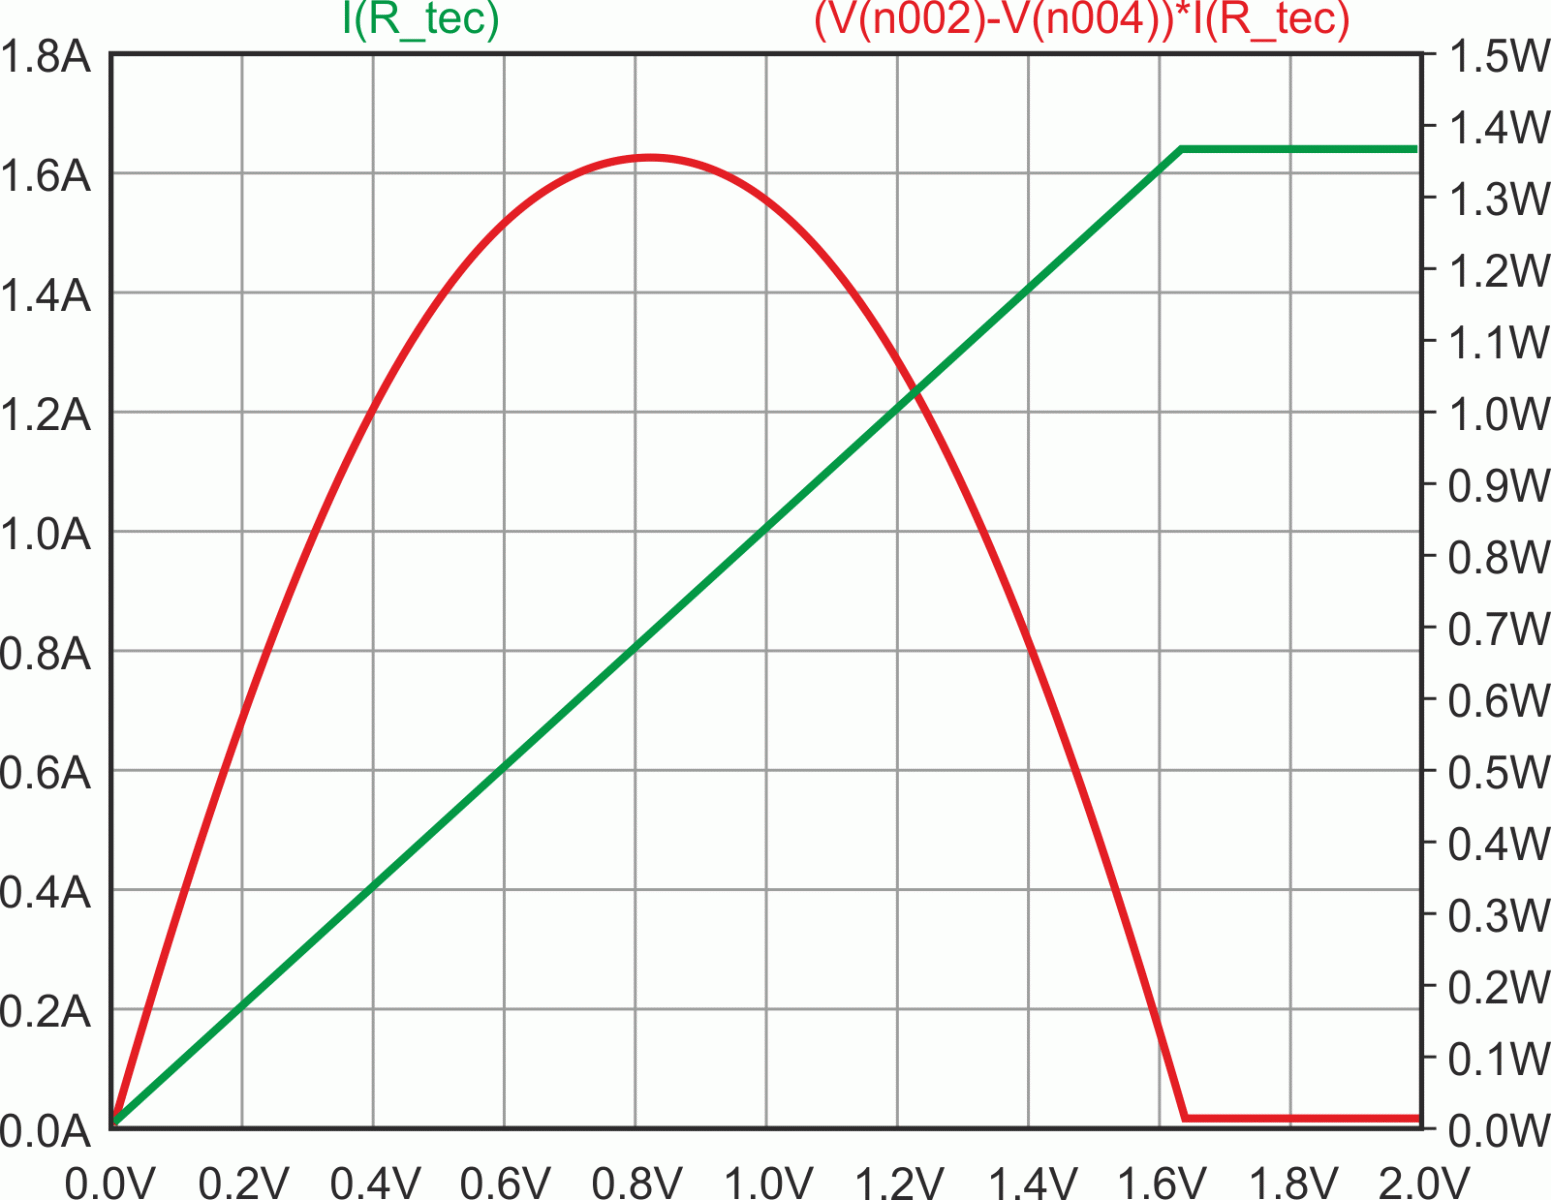 Снижение напряжения источника питания V1 до 3.3 В уменьшает пиковую мощность, рассеиваемую транзистором драйвера M1, до 1.35 Вт при токе TEC, равном 0.8 А. При максимальном токе 1.65 А M1 рассеивает мощность всего 20 мВт. (По горизонтали - управляющее напряжение V2).